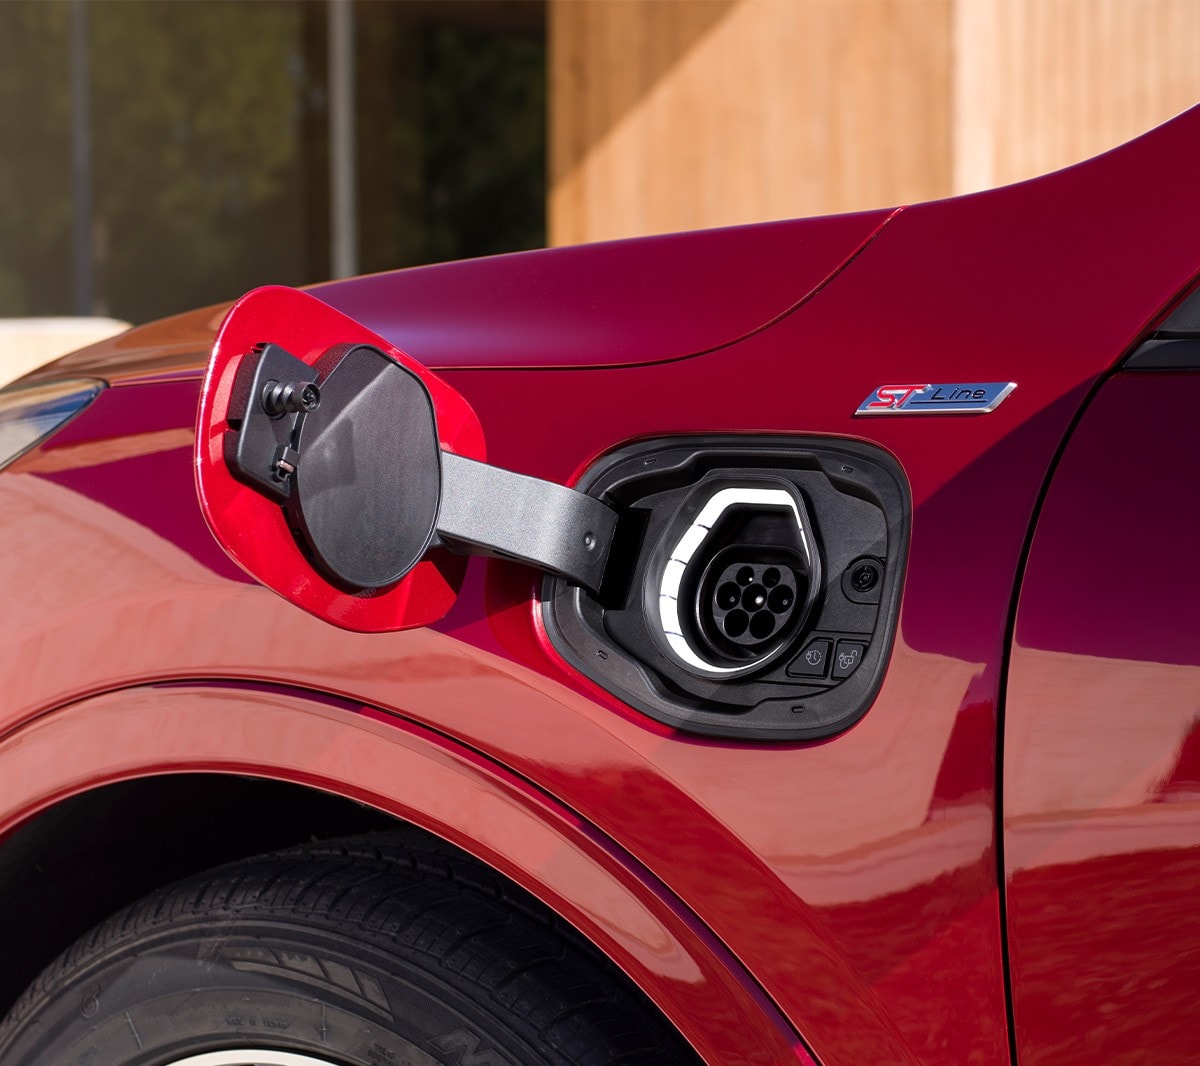 Ford Kuga Plug-in Hybrid couleur rouge. Gros plan sur la prise de chargement